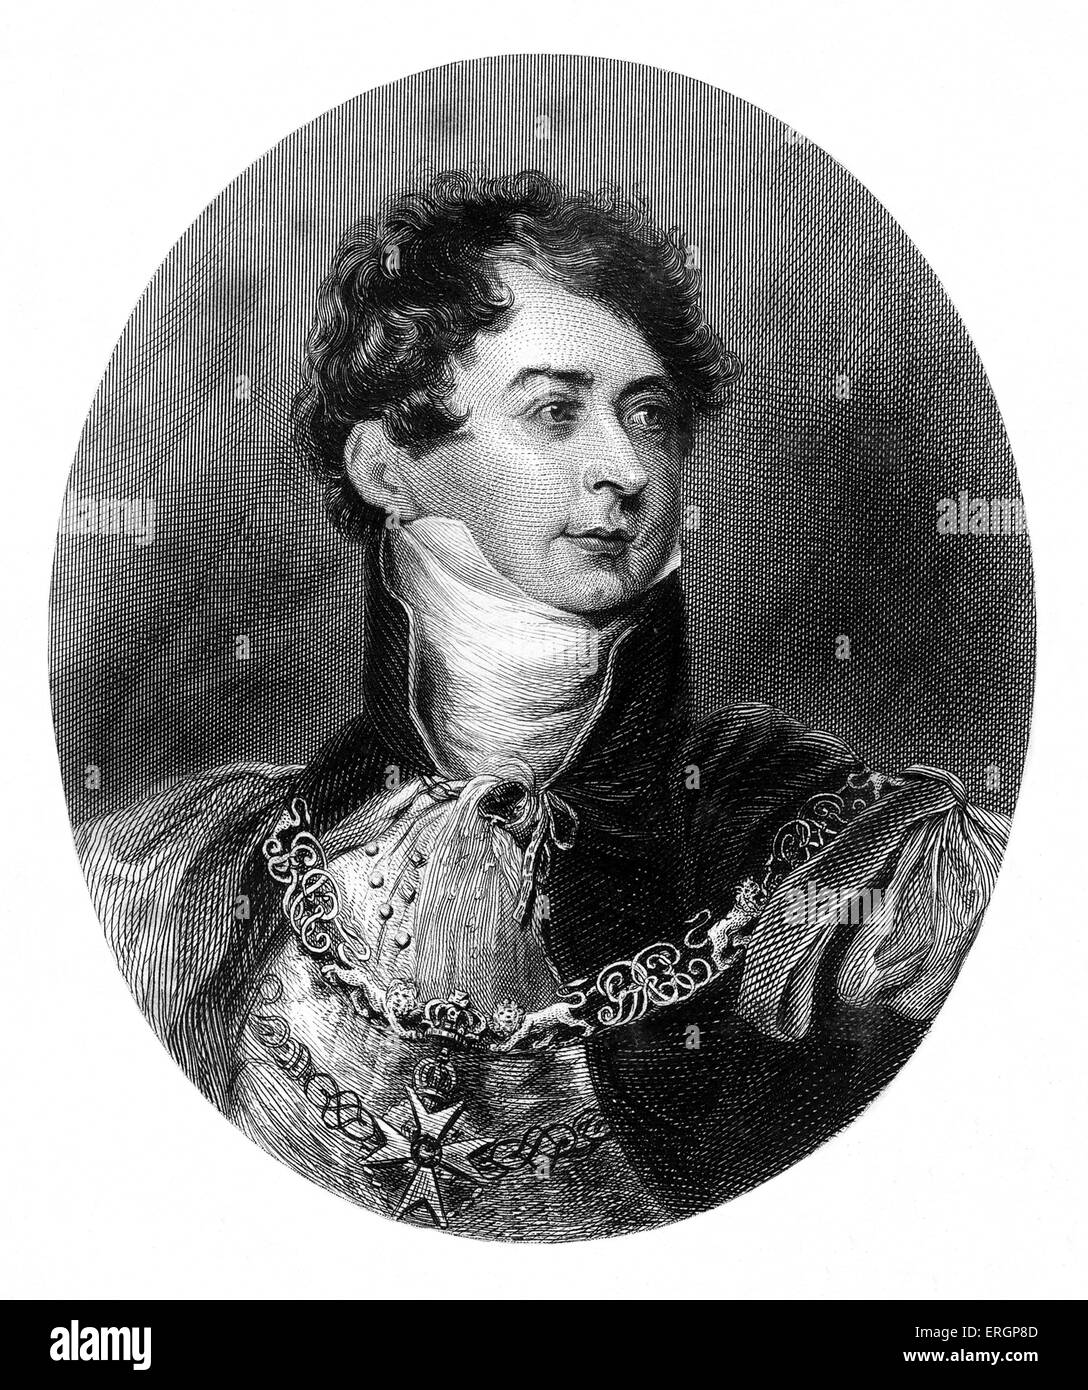 Le roi George IV, portrait. 1820 - 1830 régna. George a agi comme régent pour son père à partir de 1811-1820. Banque D'Images